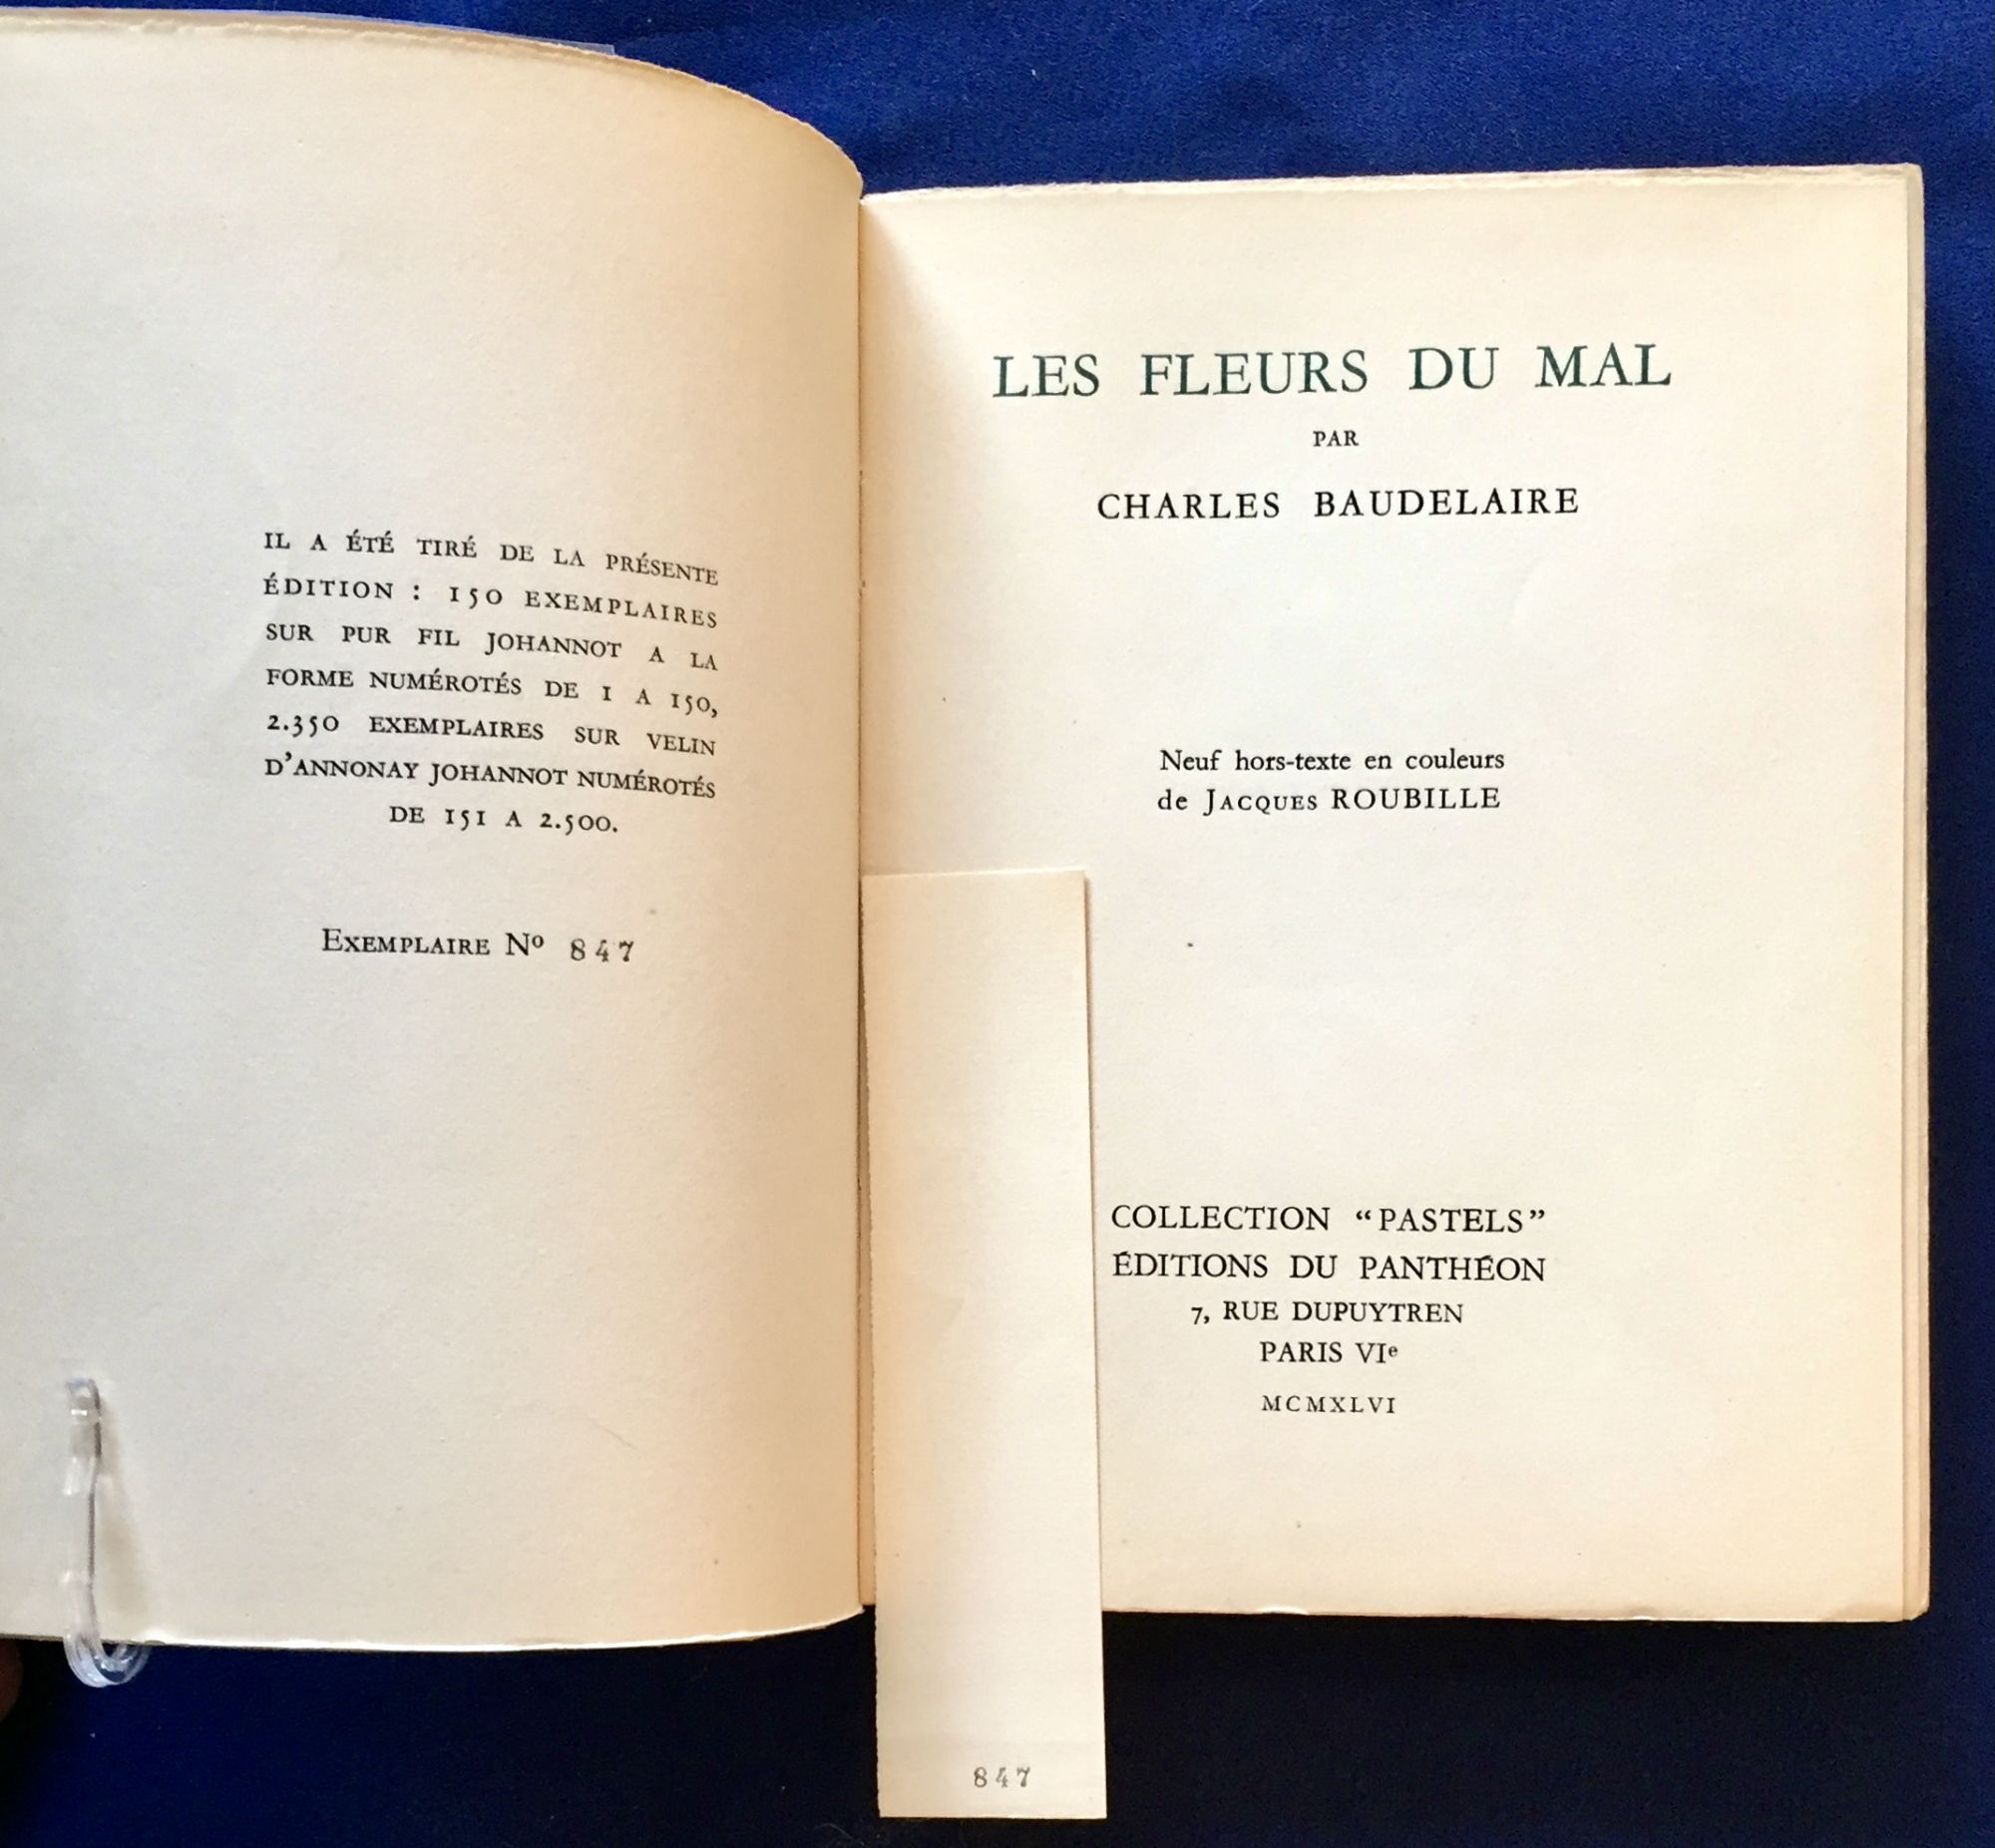 LES FLEURS DU MAL; Neuf hors-texte en couleurs / de Jacques Roubille by ...